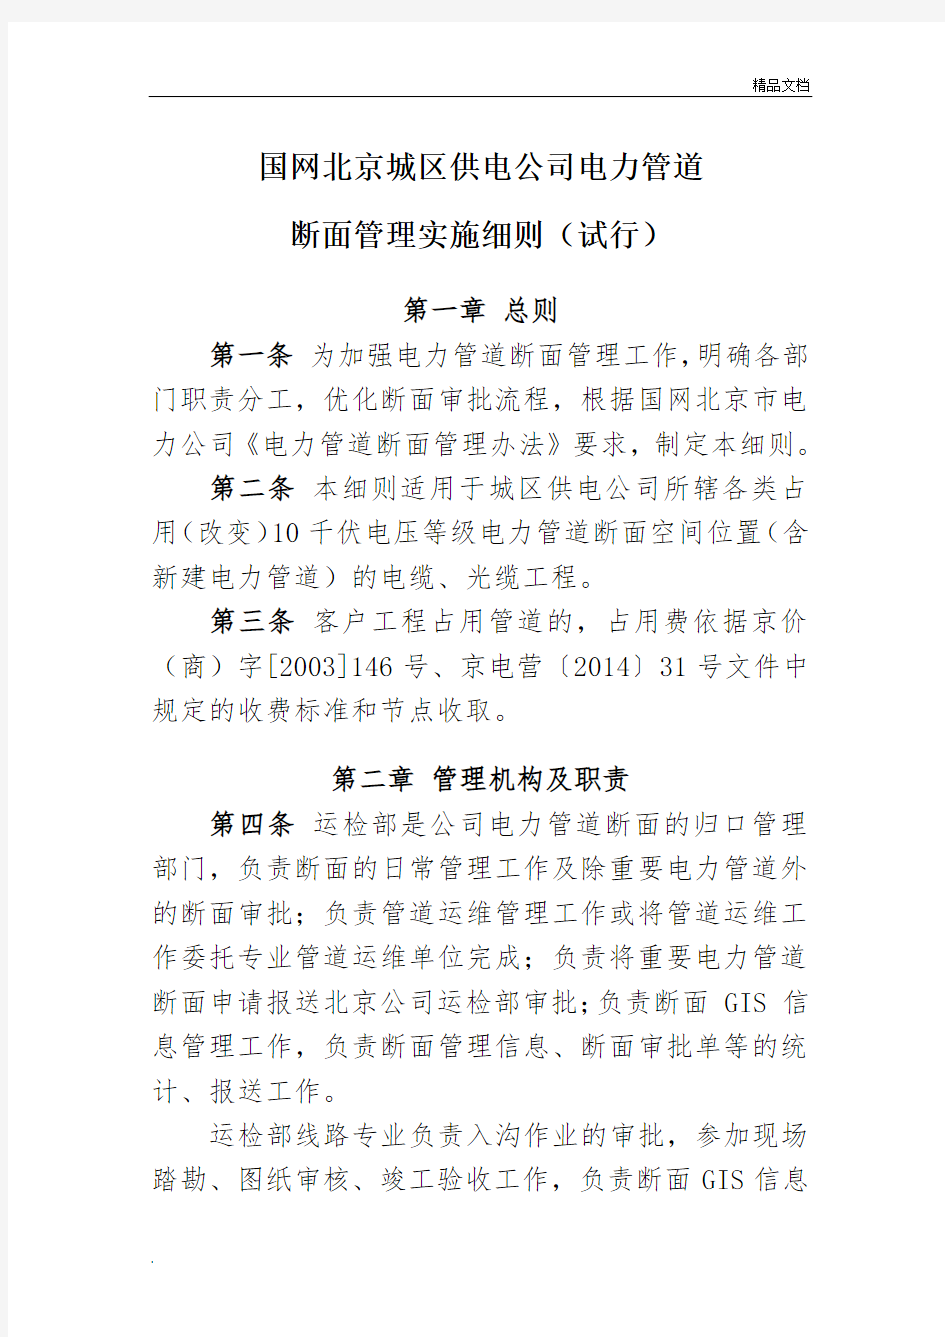 国网北京城区供电公司电力管道断面管理实施细则(试行)